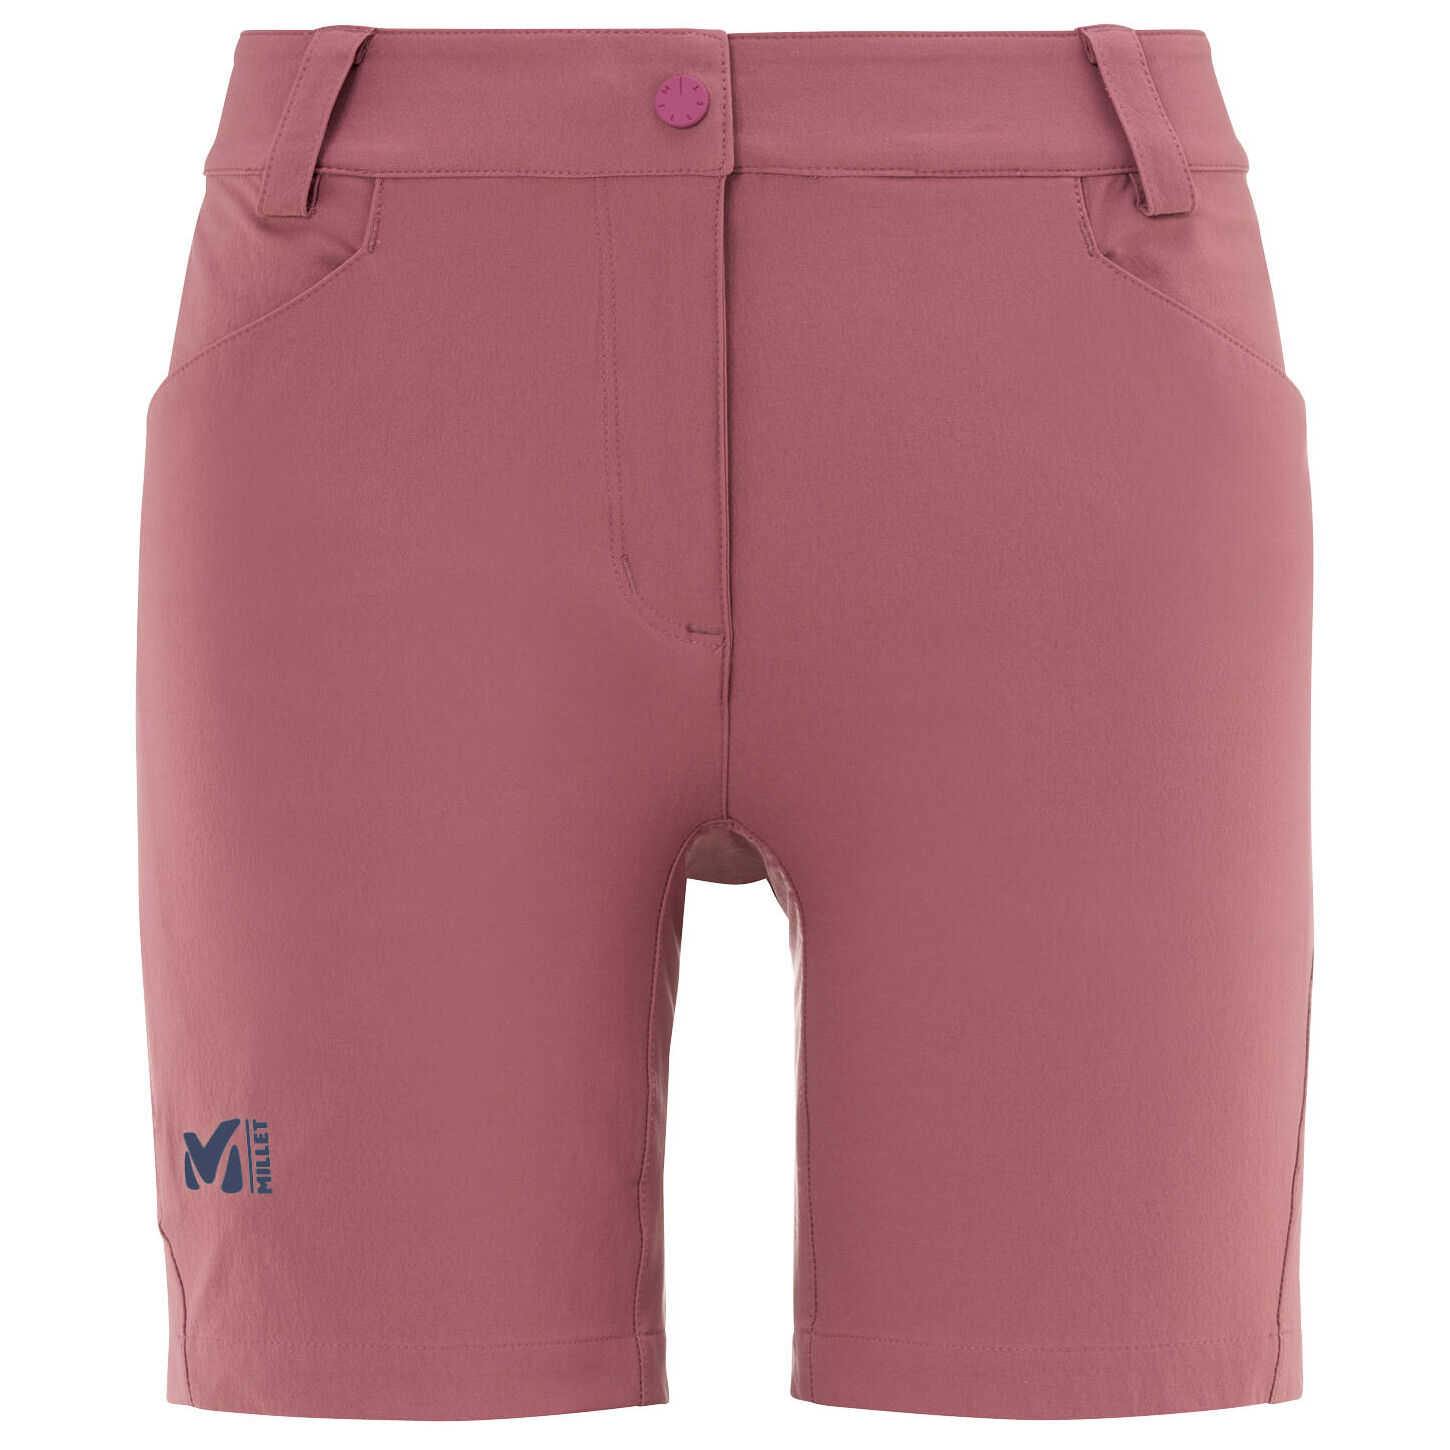 Millet - Ld Trekker Stretch Short - Pantalones cortos - Mujer